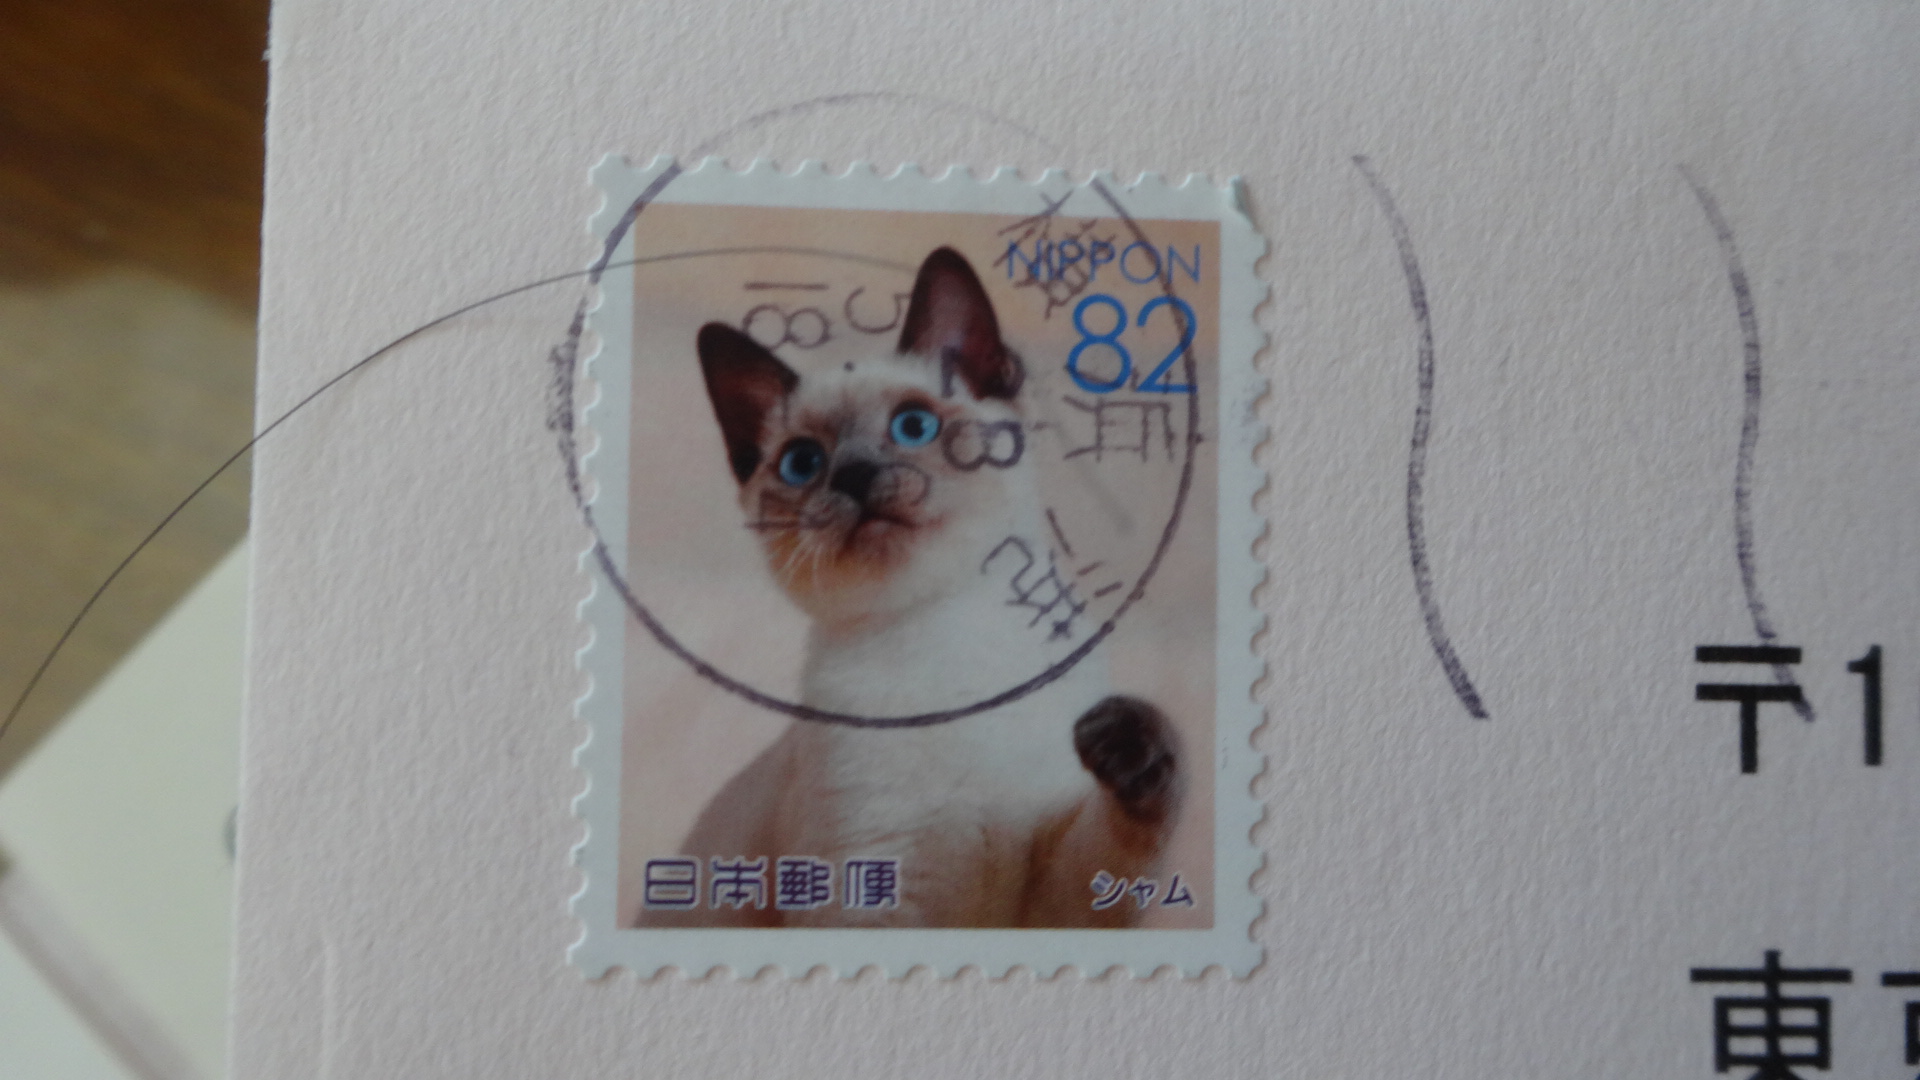 消印が押されたネコ切手